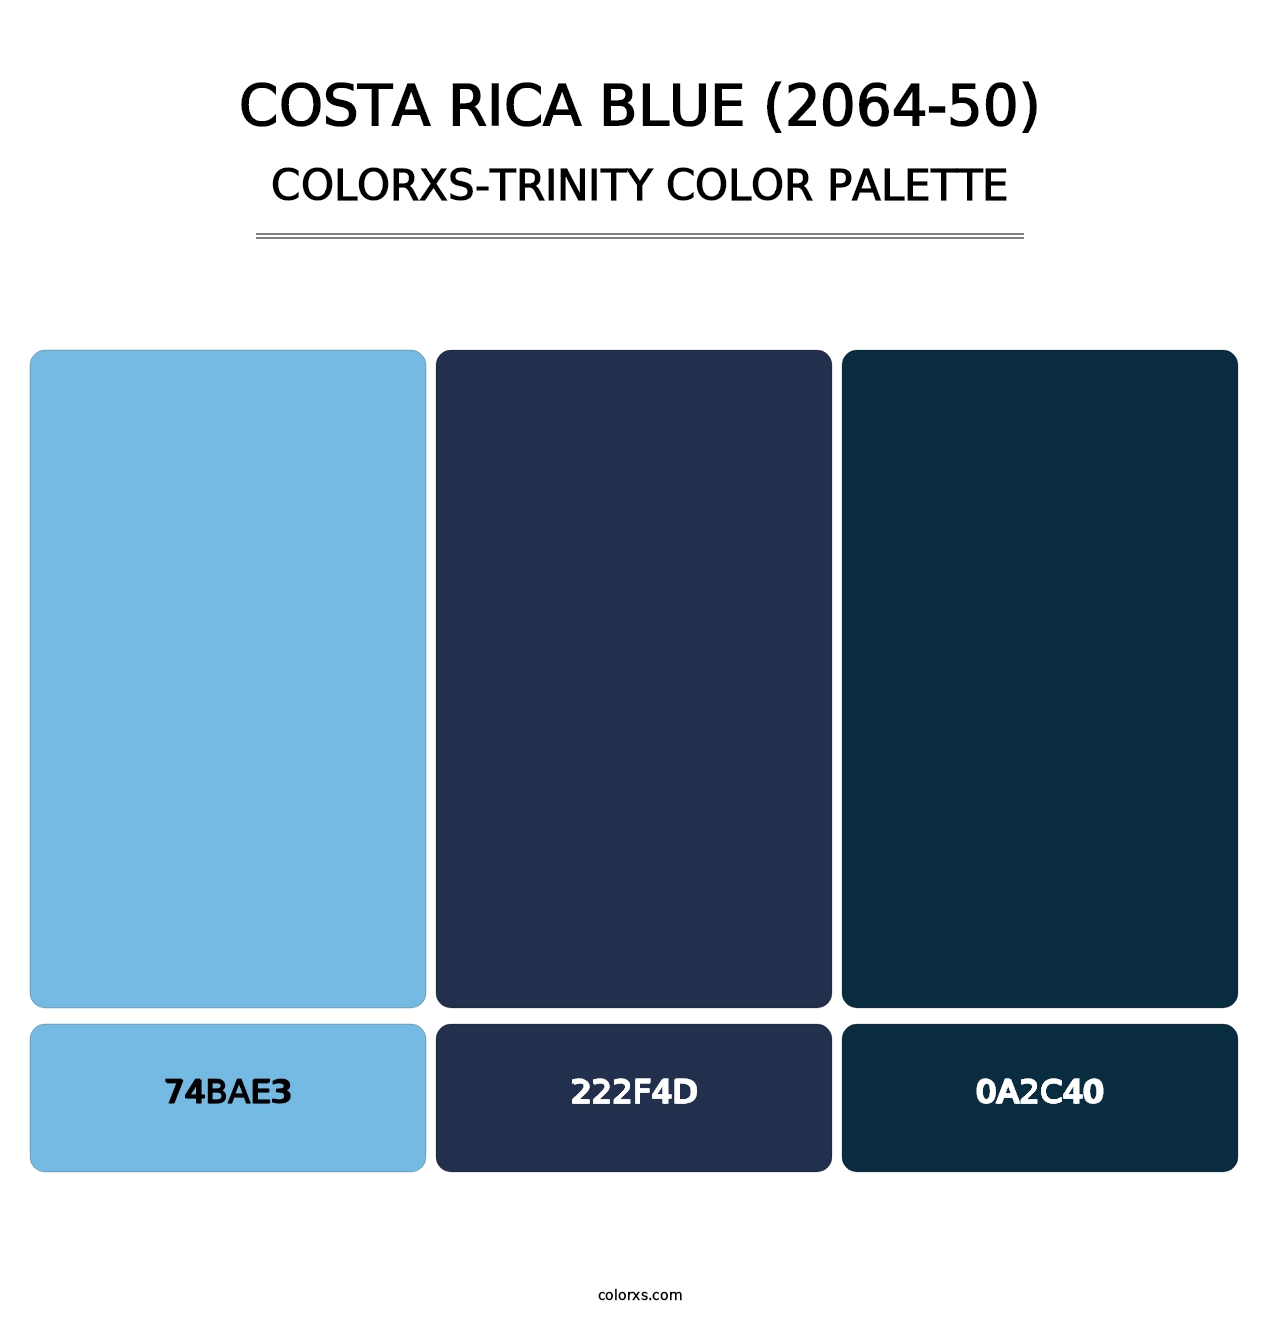 Costa Rica Blue (2064-50) - Colorxs Trinity Palette